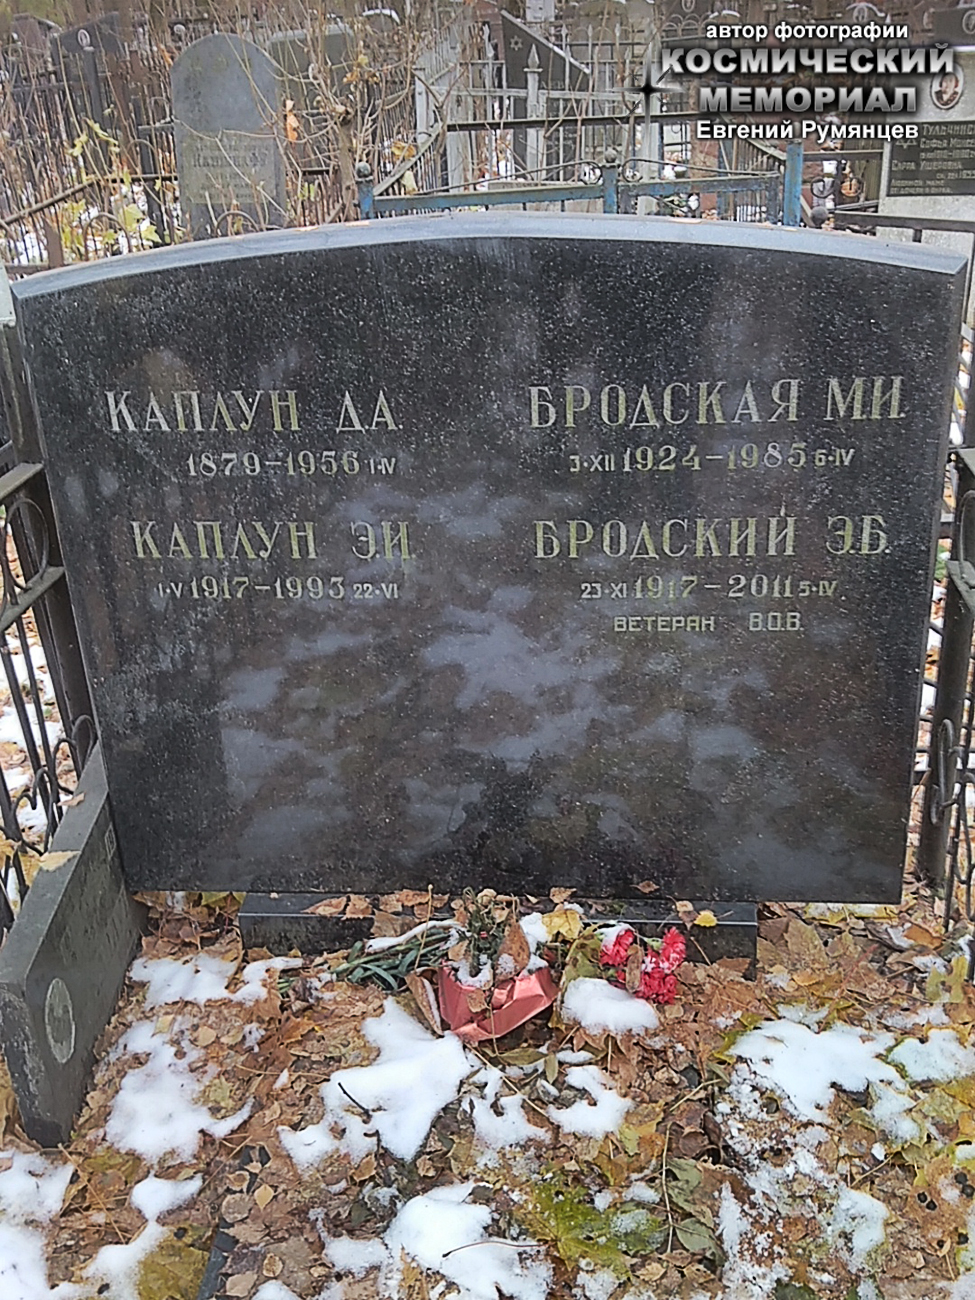 г. Москва, Перловское кладбище (уч. № 6). Надгробие на могилах Э.Б. Бродского и членов его семьи (ноябрь 2017 года)